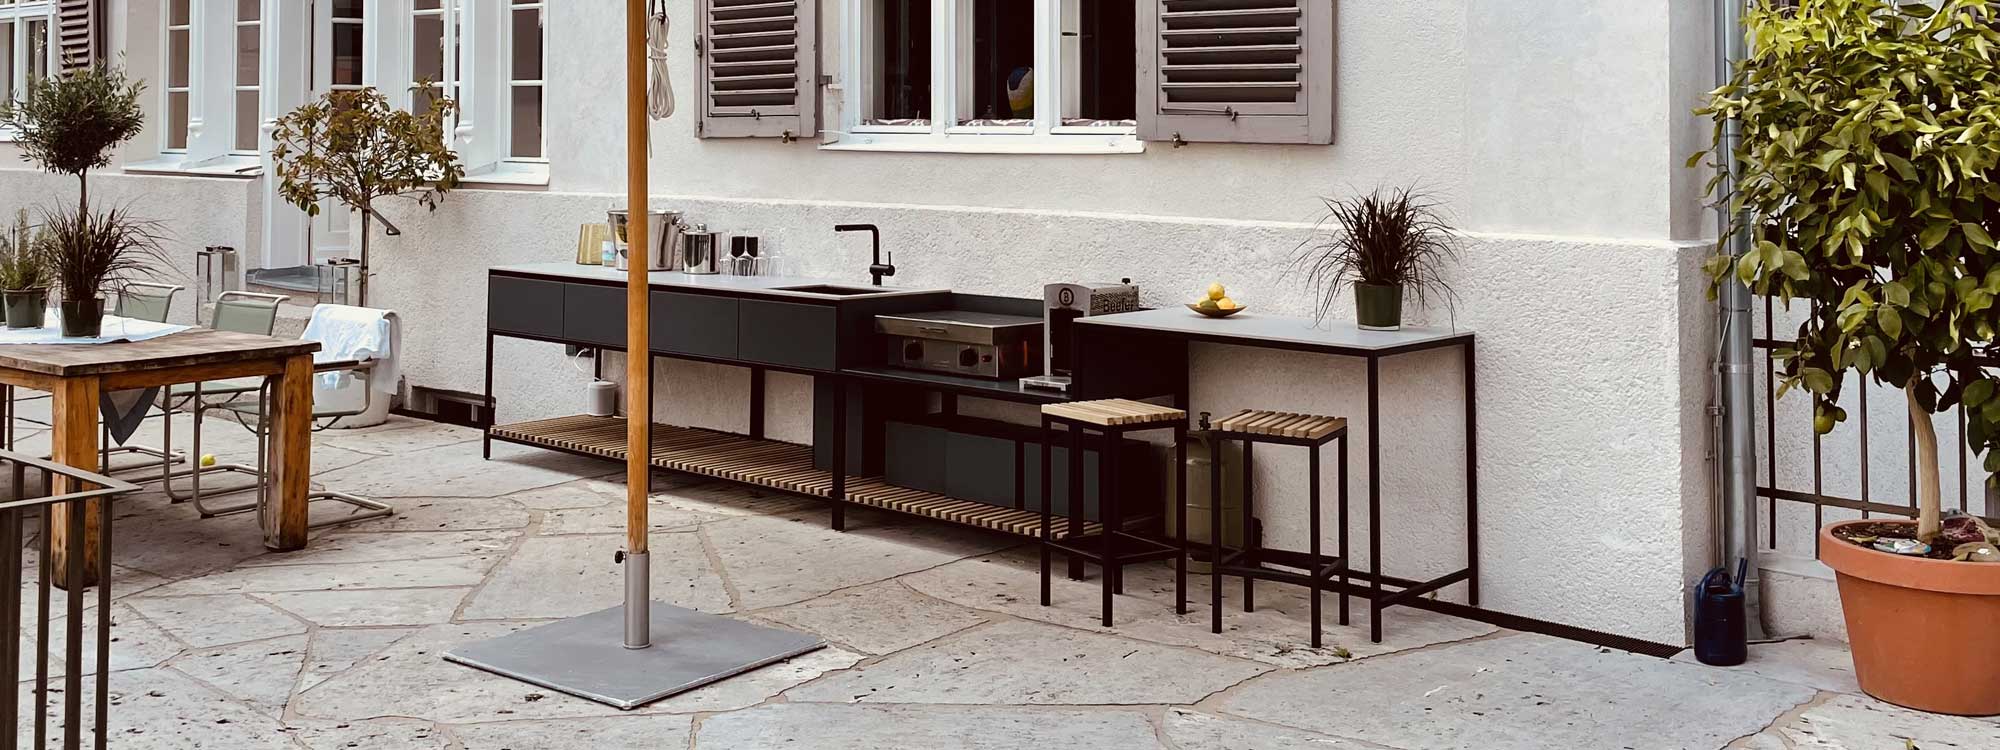 Ticino Frame outdoor kitchen & modular BBQ furniture in luxury garden kitchen materials by Conmoto minimalist garden furniture, Germany.